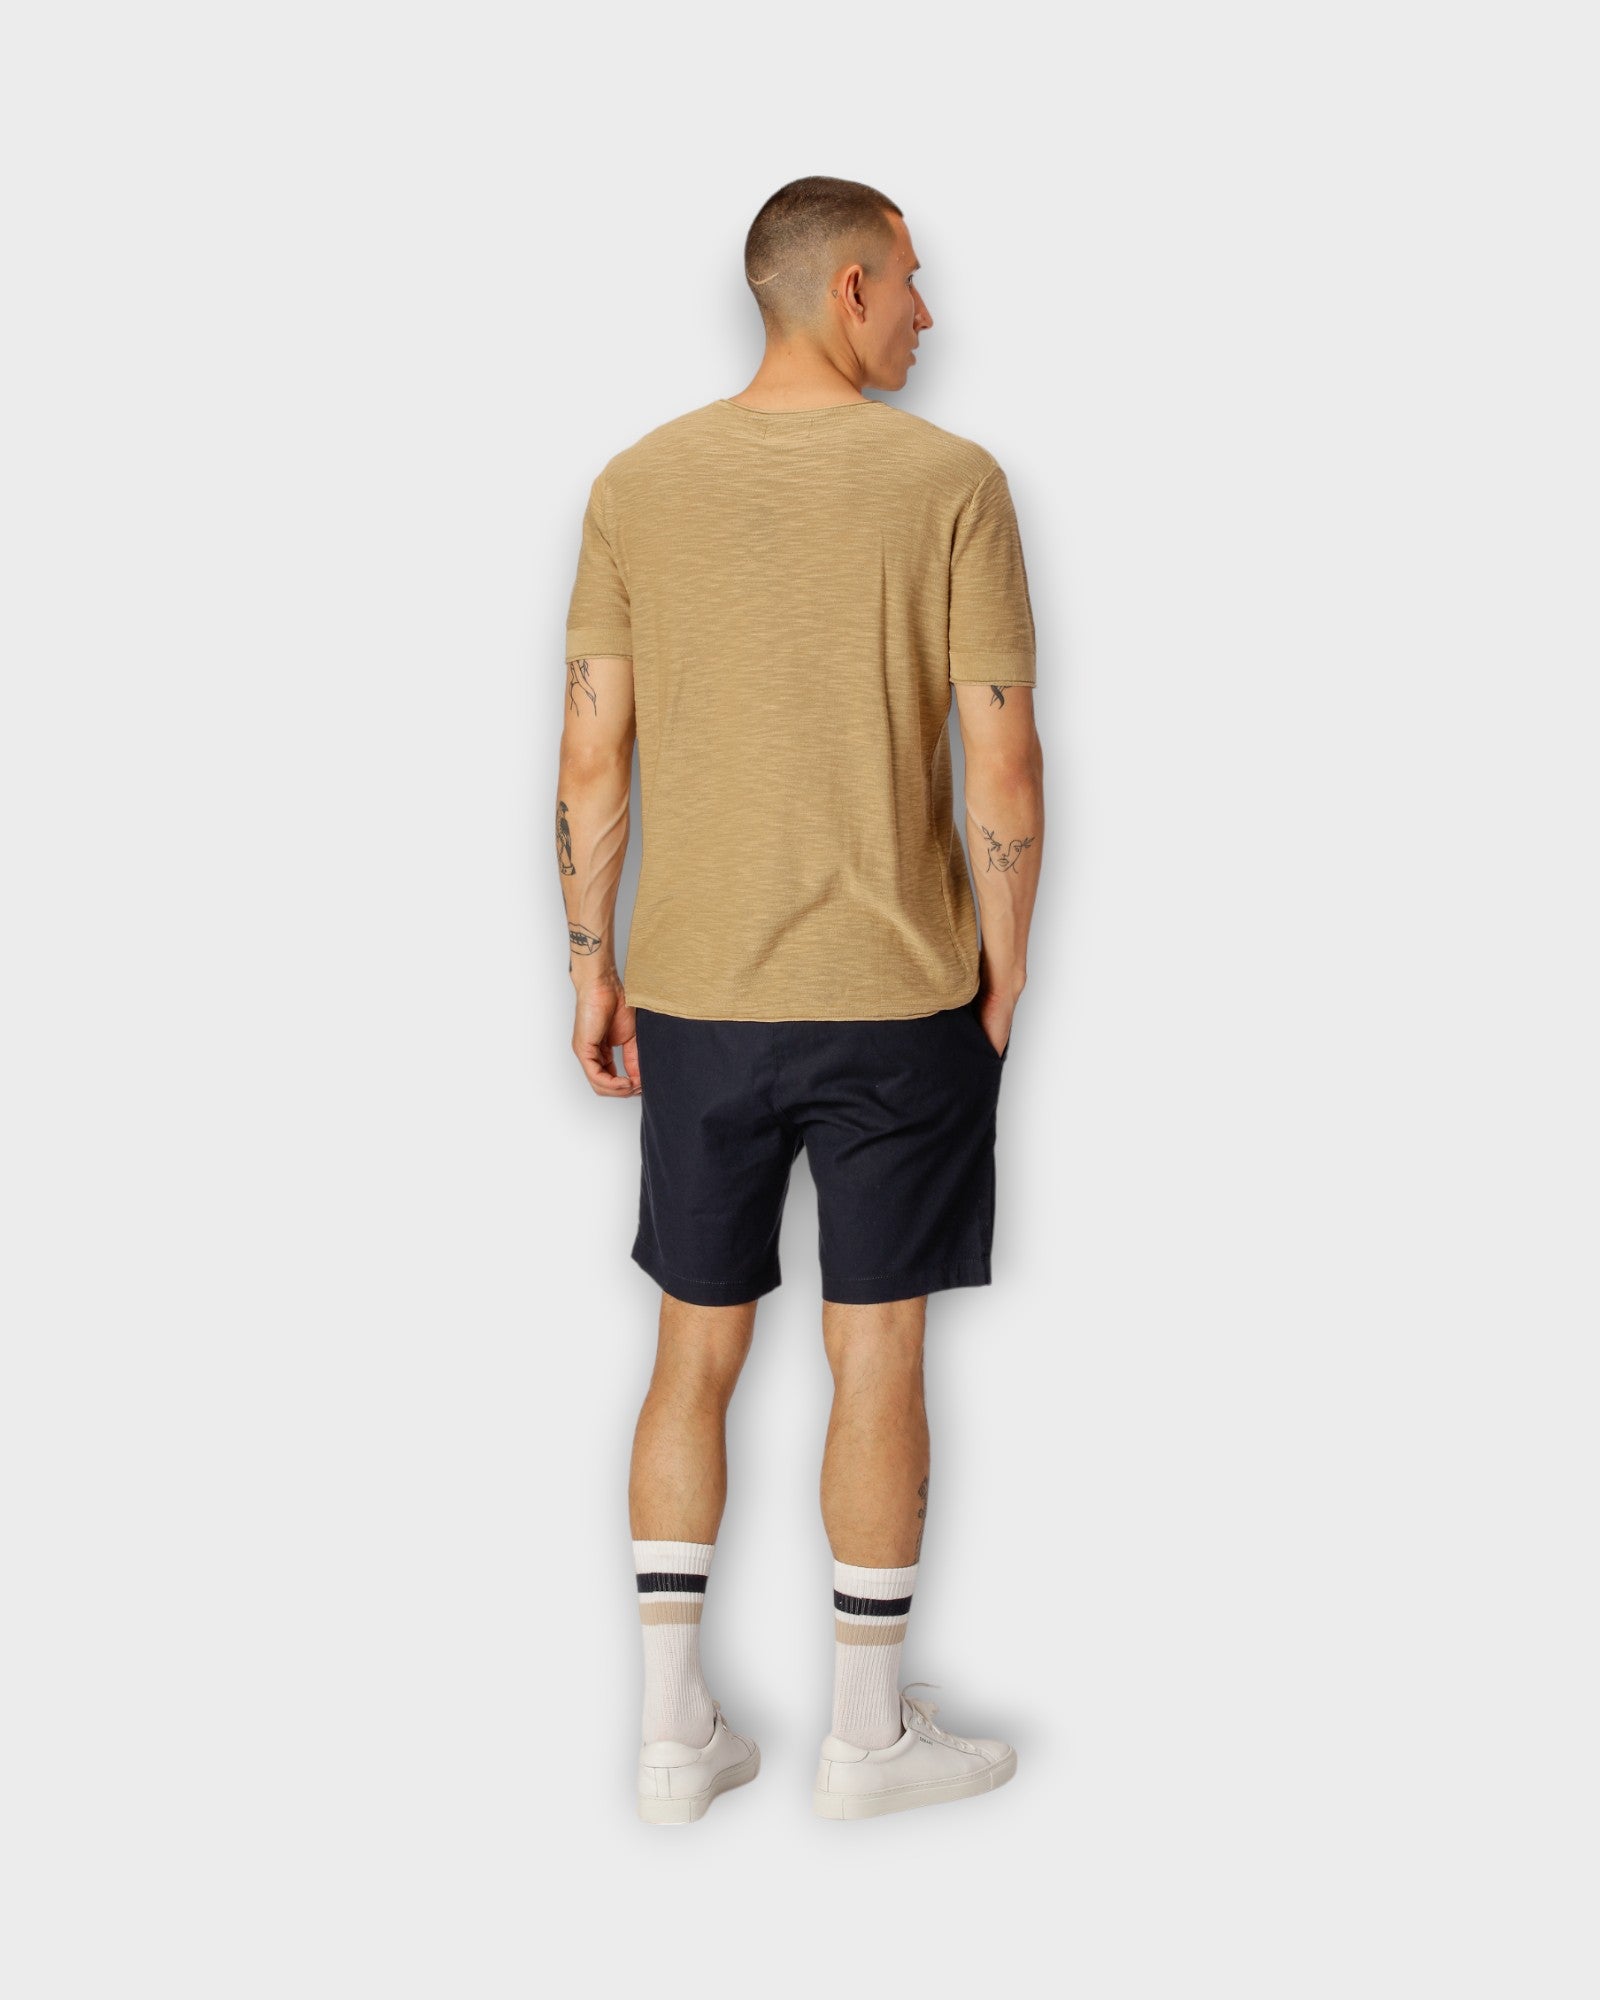 Barcelona Cotton Linen Shorts Navy fra Clean Cut Copenhagen. Mørkeblå hør shorts til mænd. Her set på model bagfra.